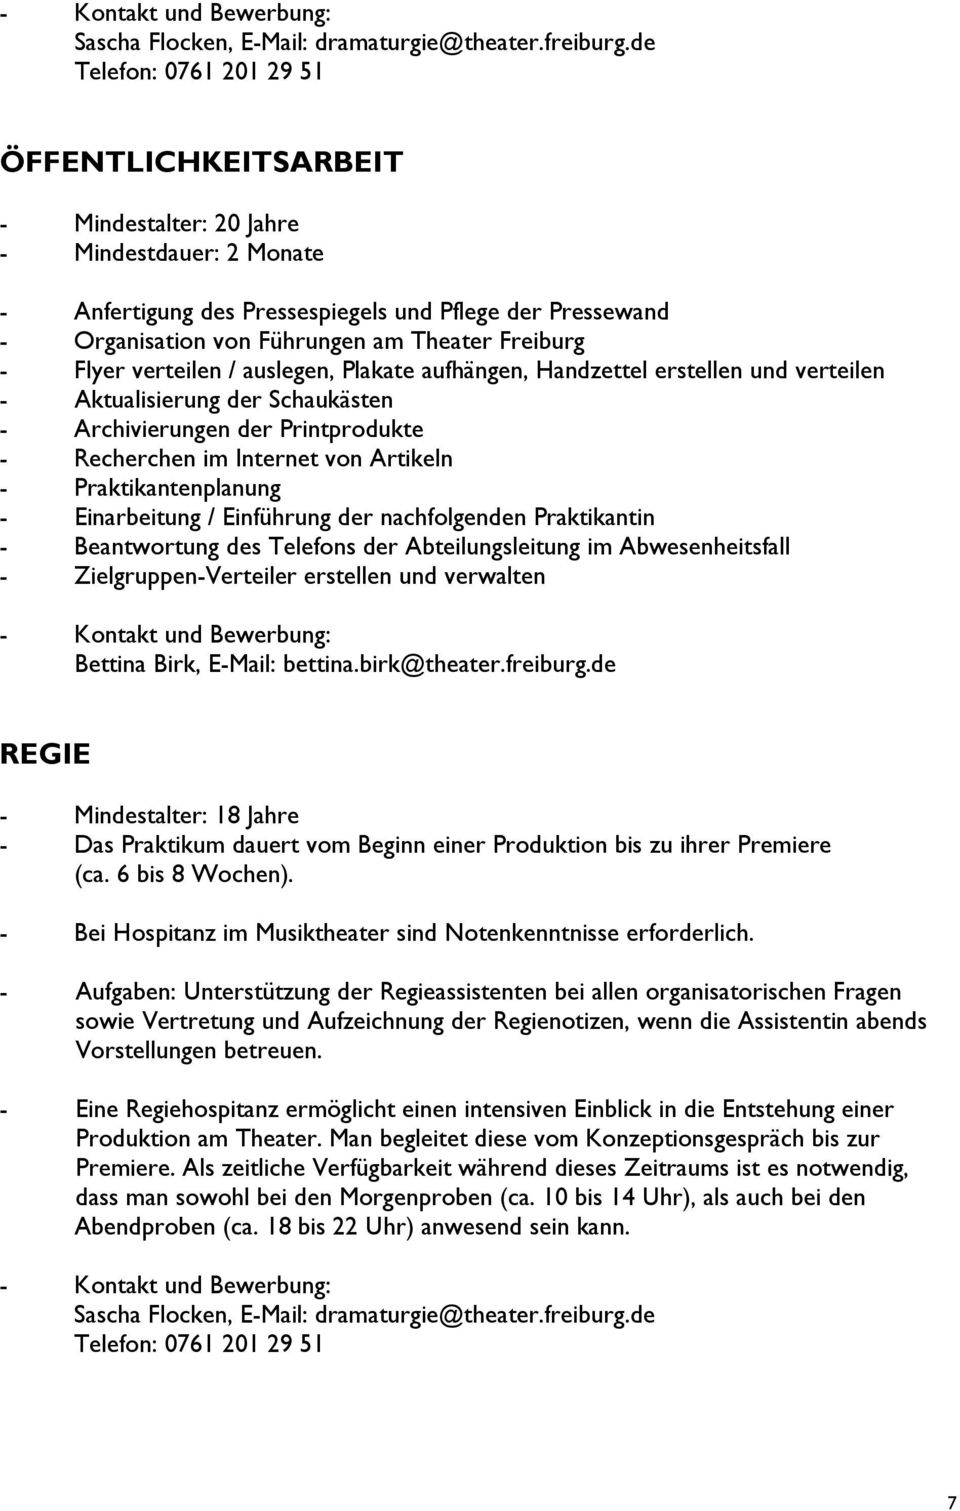 Freiburg - Flyer verteilen / auslegen, Plakate aufhängen, Handzettel erstellen und verteilen - Aktualisierung der Schaukästen - Archivierungen der Printprodukte - Recherchen im Internet von Artikeln